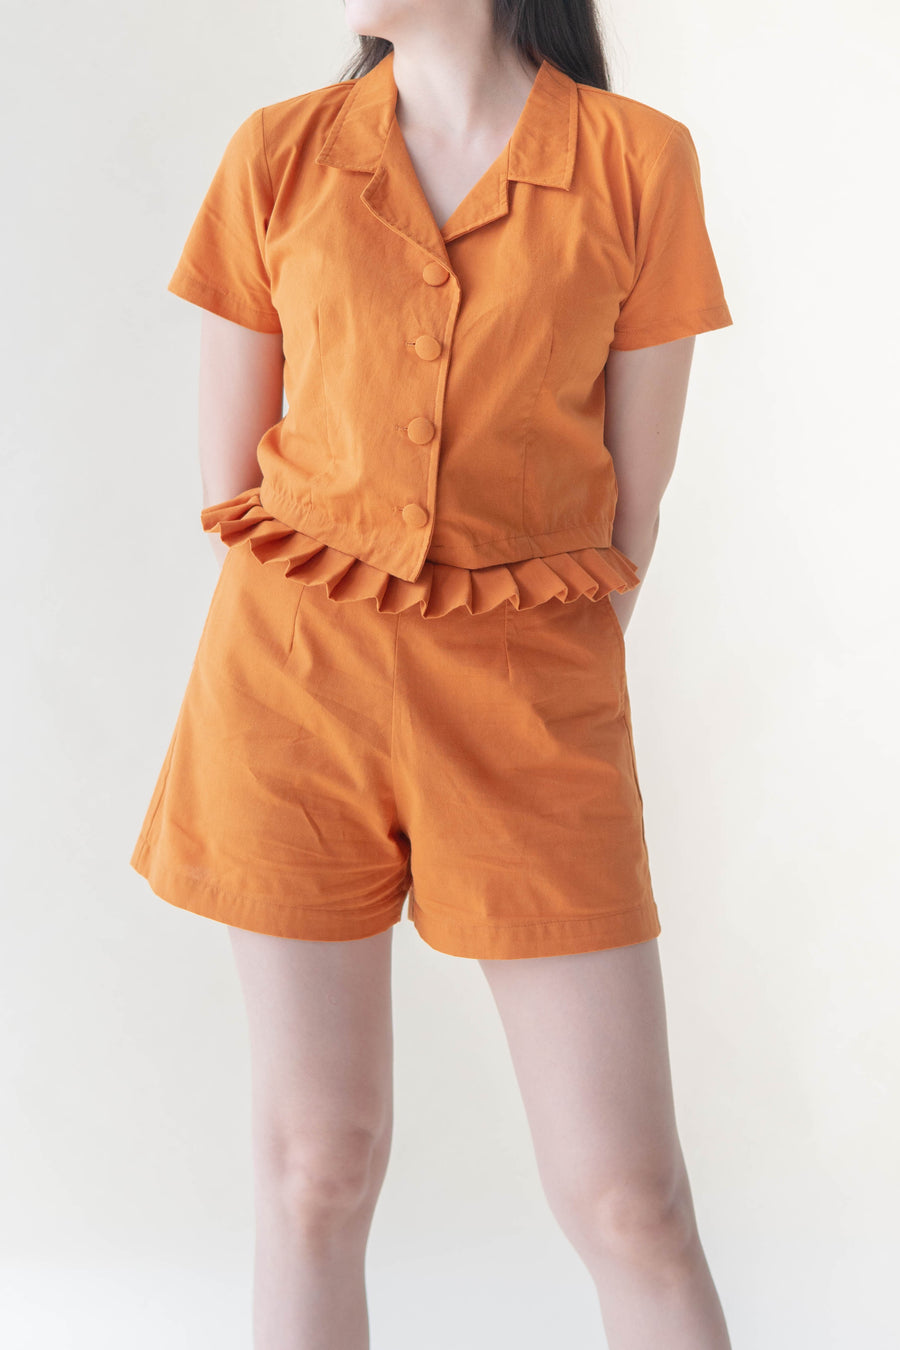 Cropped Short Sleeve - Orange